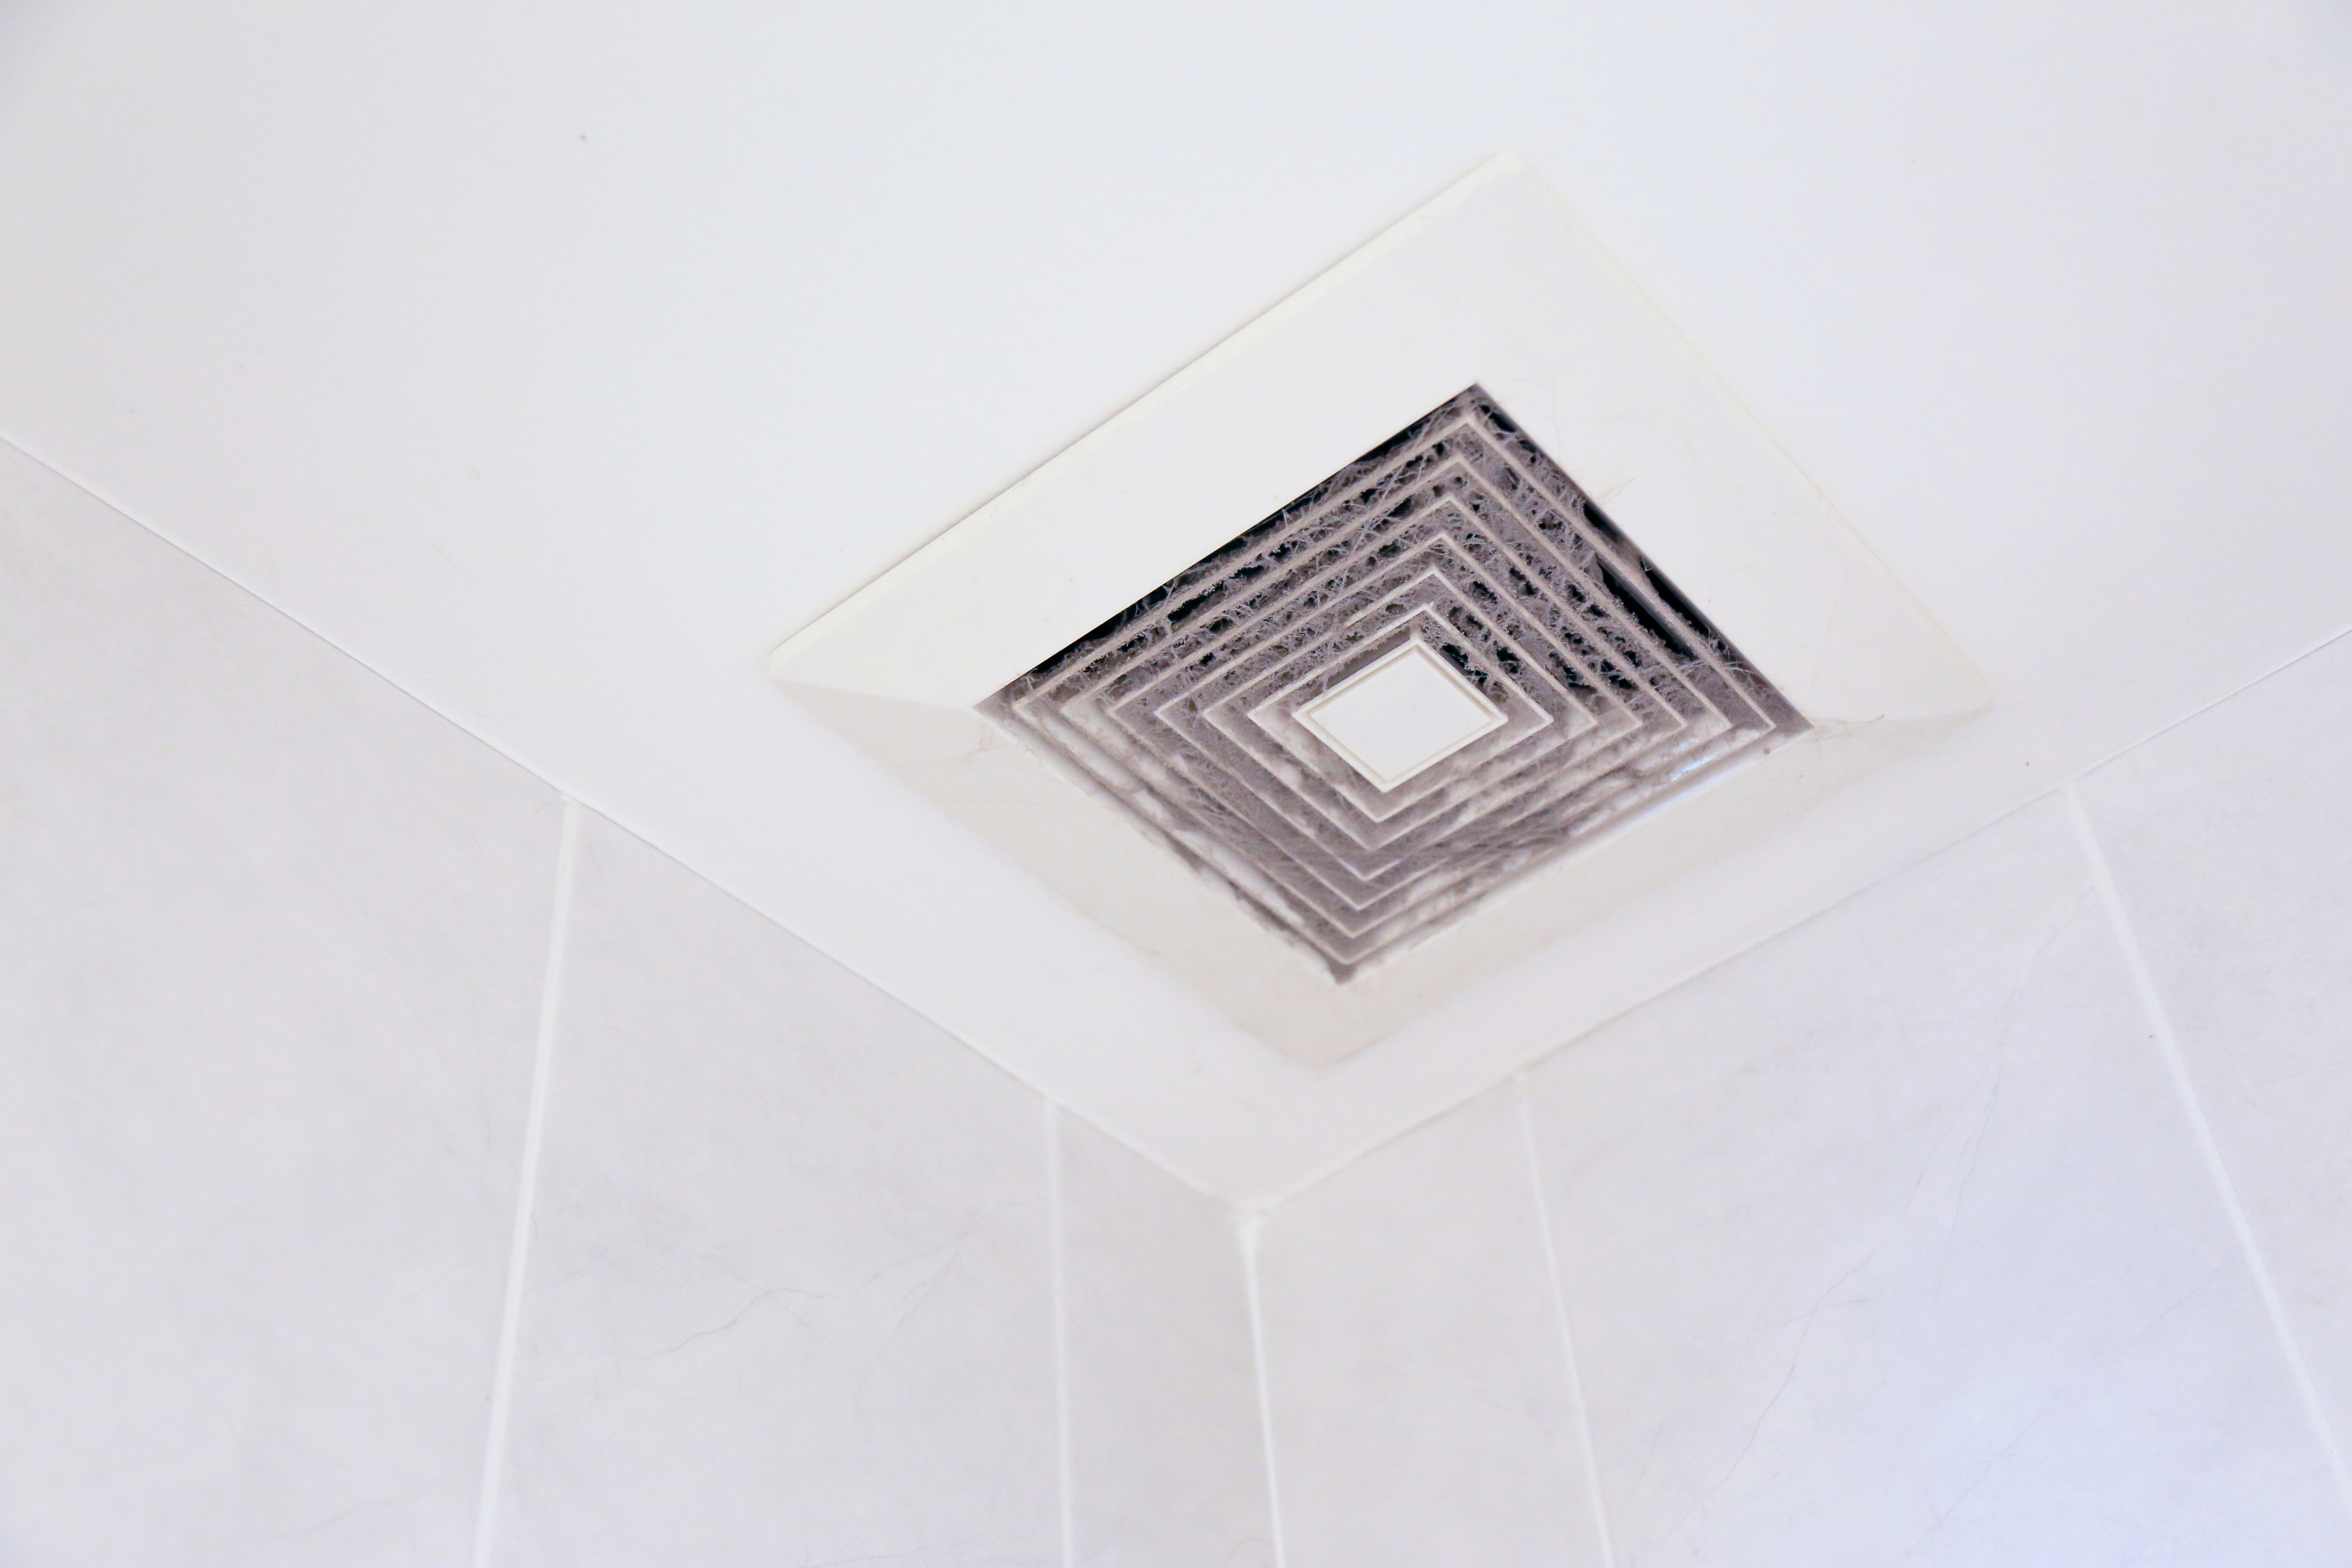 A dirty bathroom exhaust fan | Source: Shutterstock